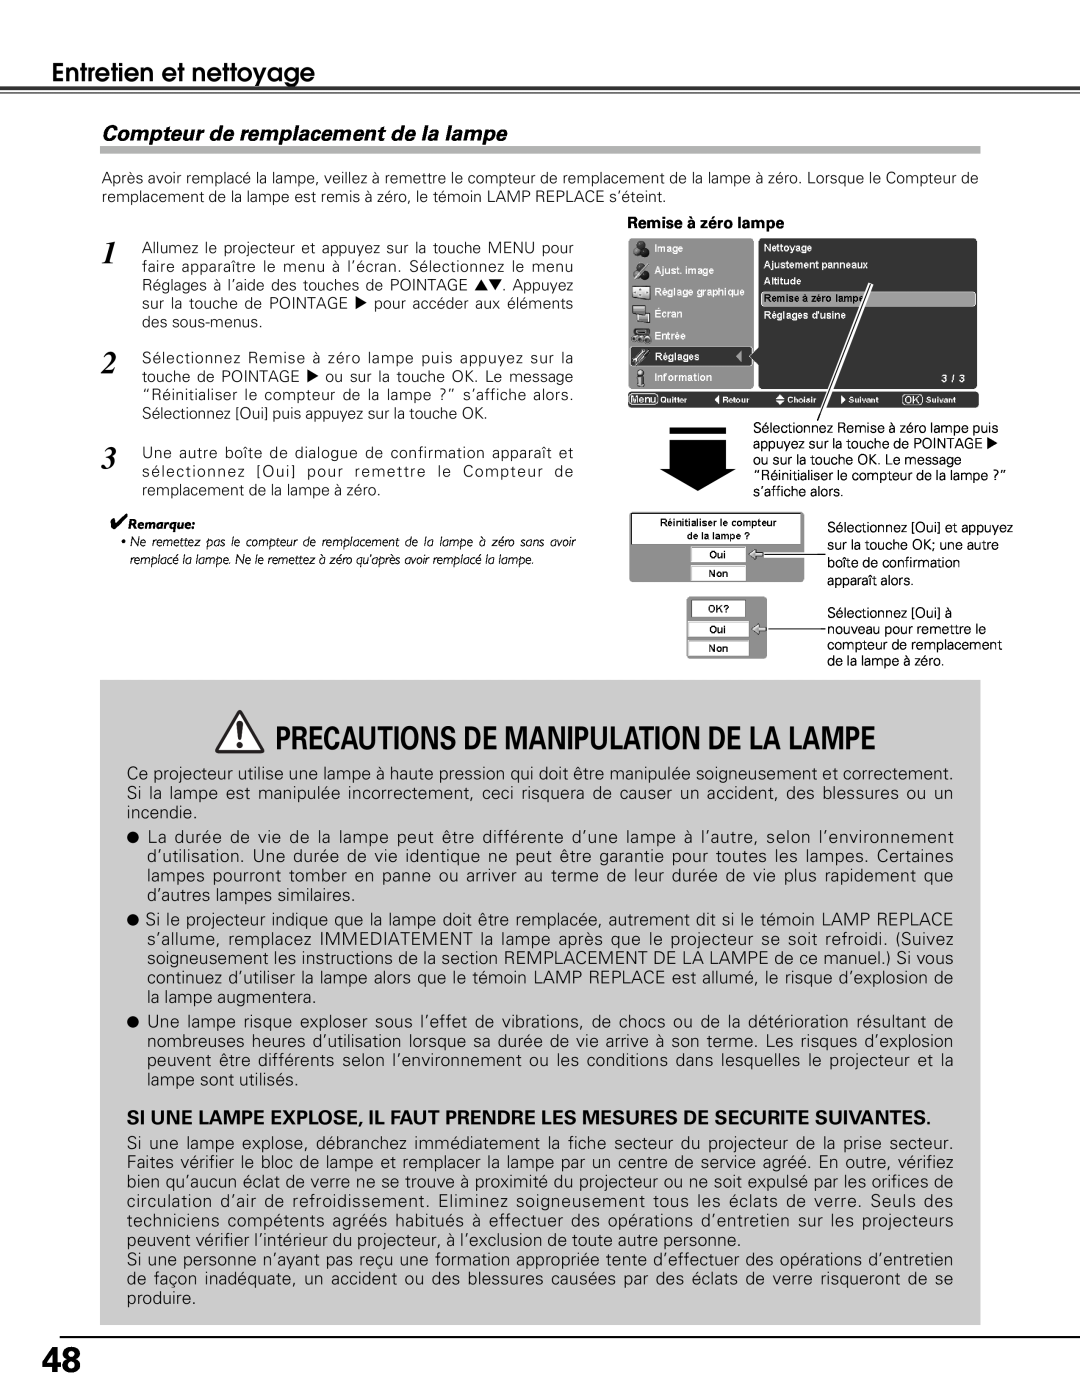 Sanyo PLV-Z5 manual Compteur de remplacement de la lampe, Precautions De Manipulation De La Lampe, Entretien et nettoyage 